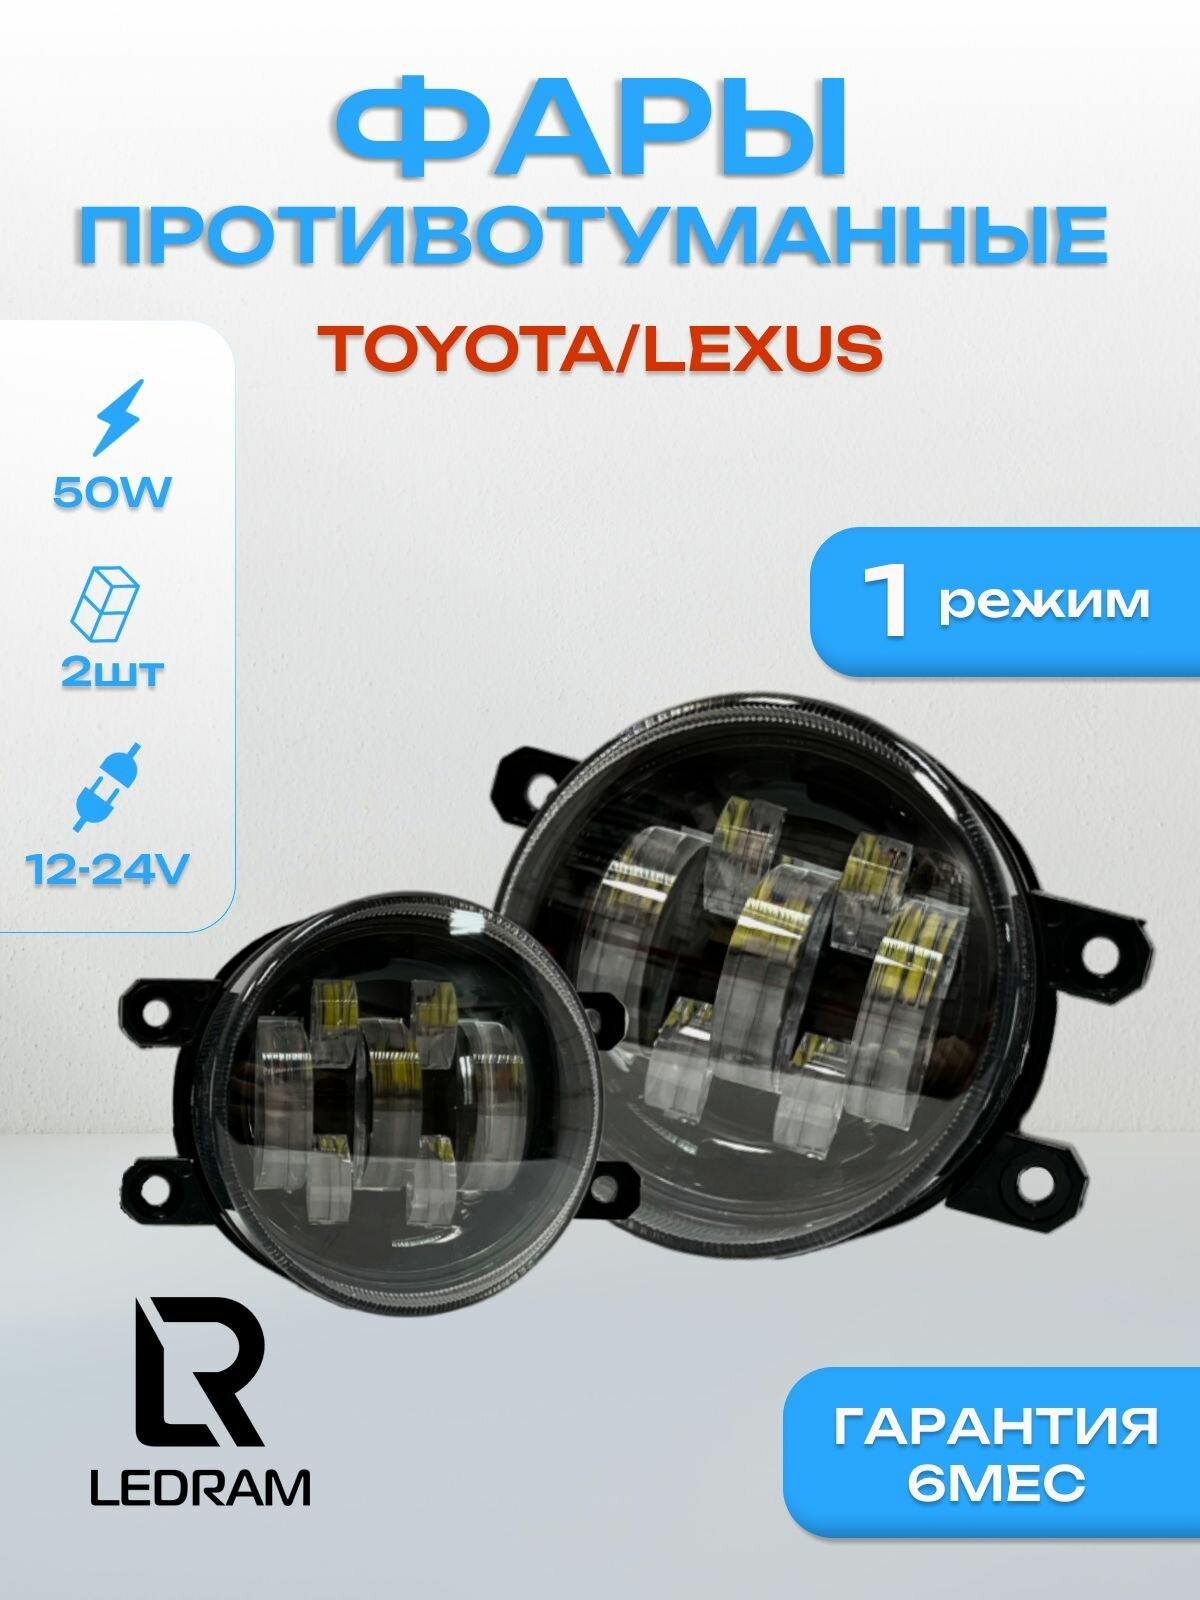 Противотуманные фары светодиодные LED TOYOTA / Lexus однорежимные